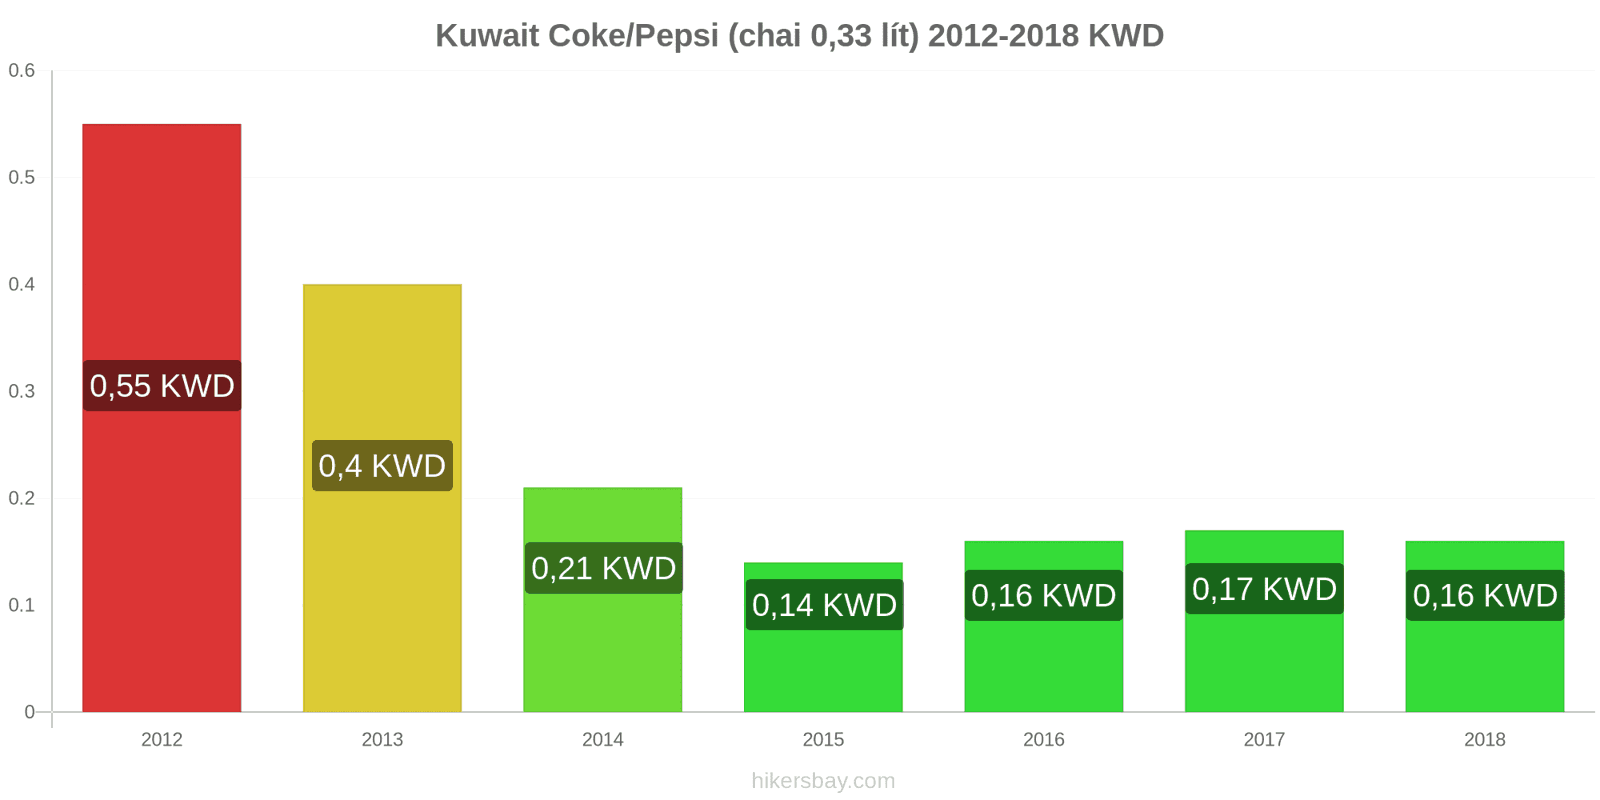 Kuwait thay đổi giá cả Coca-Cola/Pepsi (chai 0.33 lít) hikersbay.com